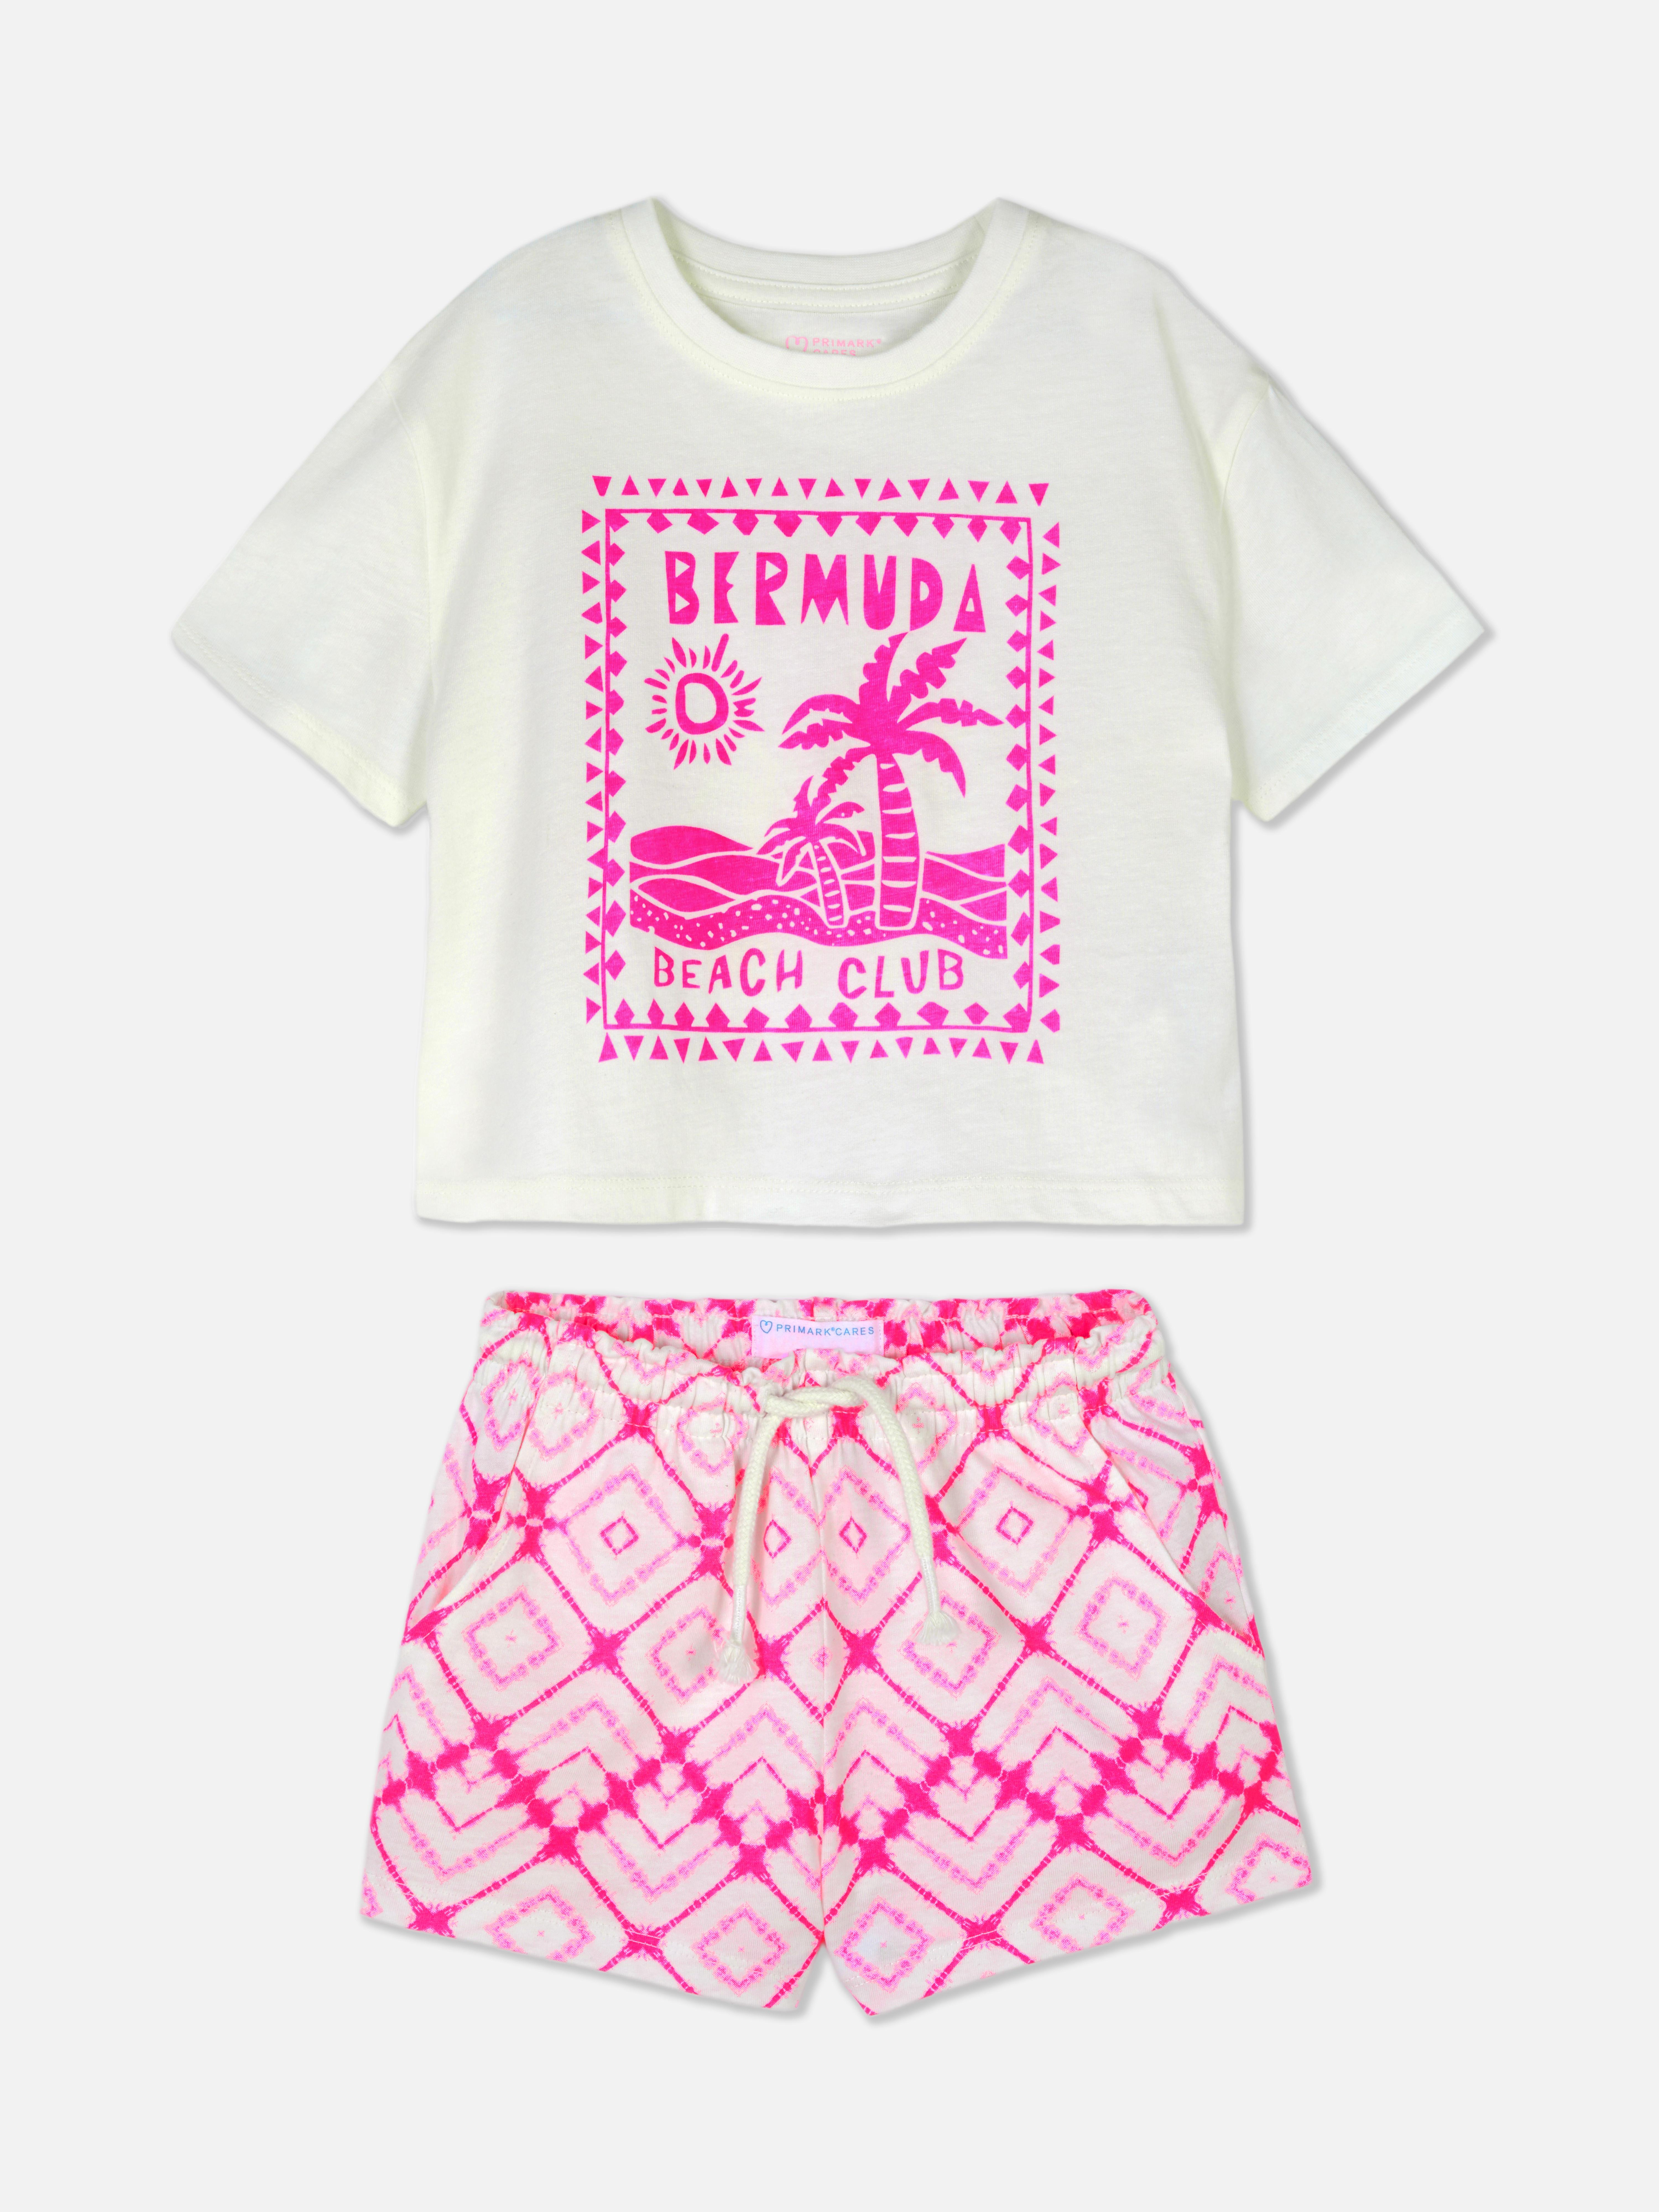 T-shirt i szorty z napisem Bermuda Beach Club